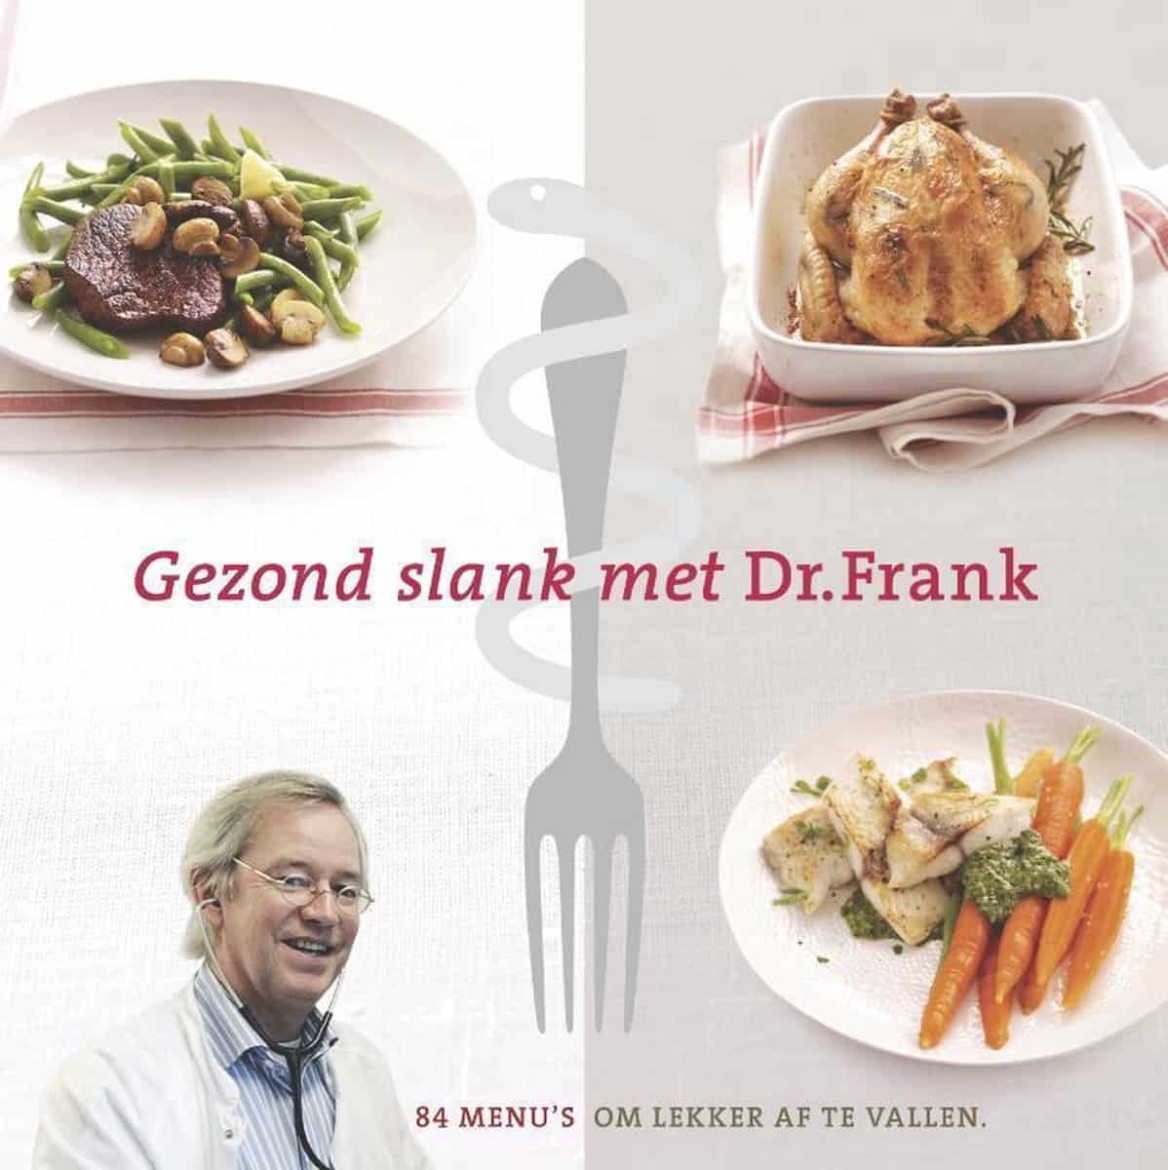 Boek gezond slank met dokter Frank